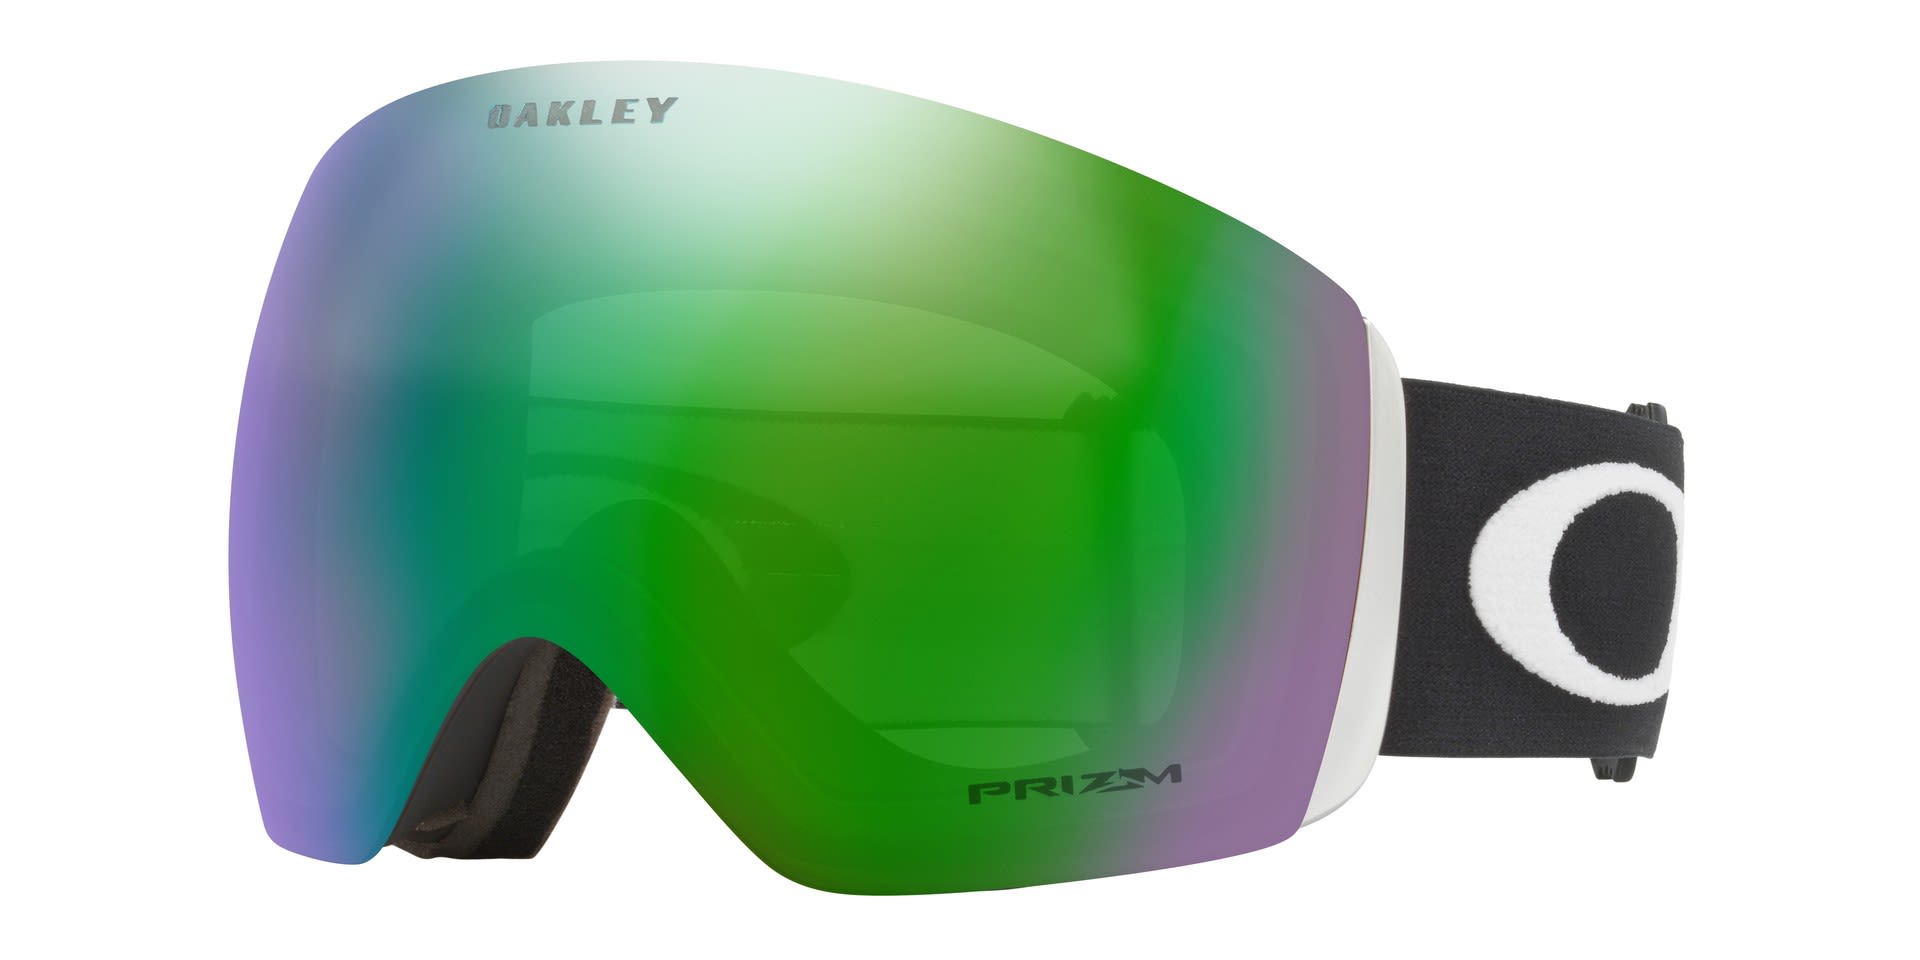 Oakley Flight Deck XL Schwarz- Skibrillen- Grsse One Size - Farbe Matte Black - Prizm Snow Jade